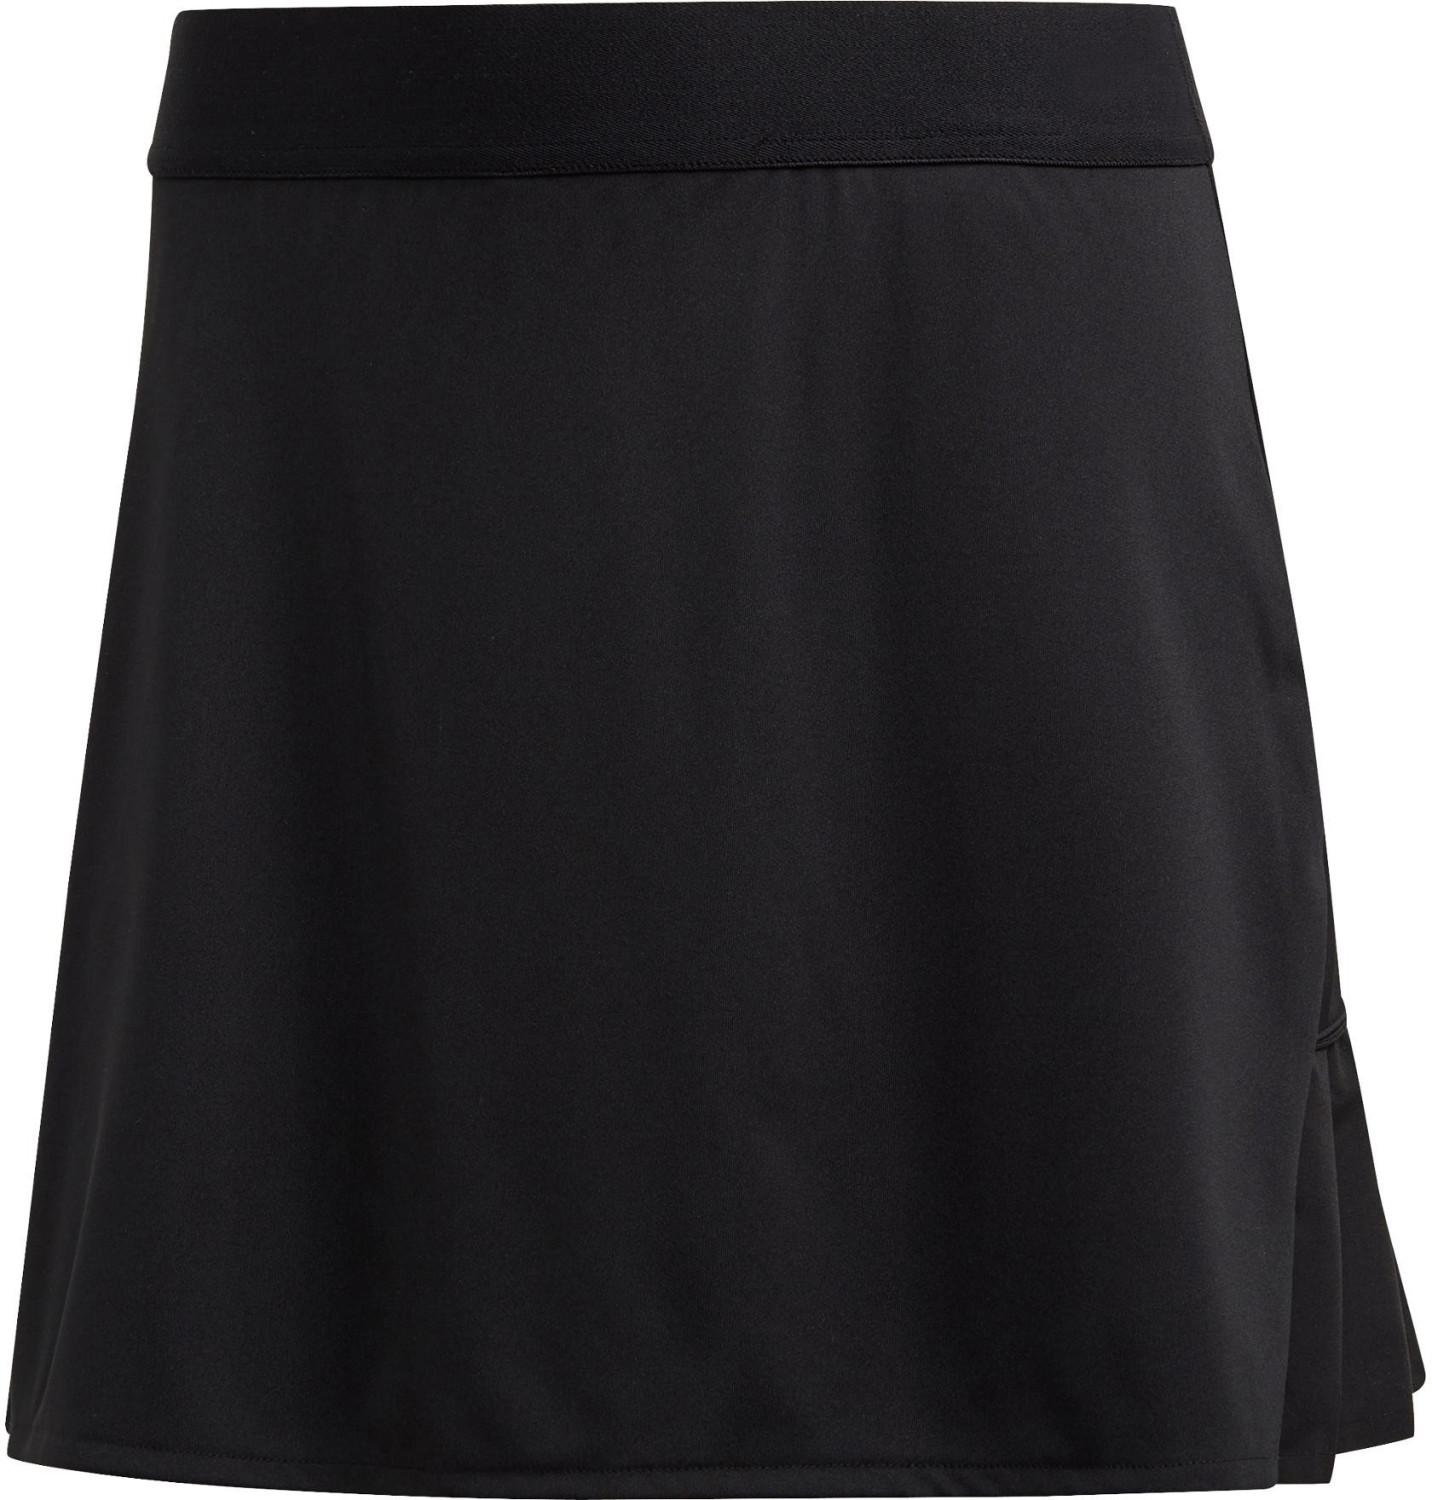 Adidas Club Long Skirt (DW8693) black